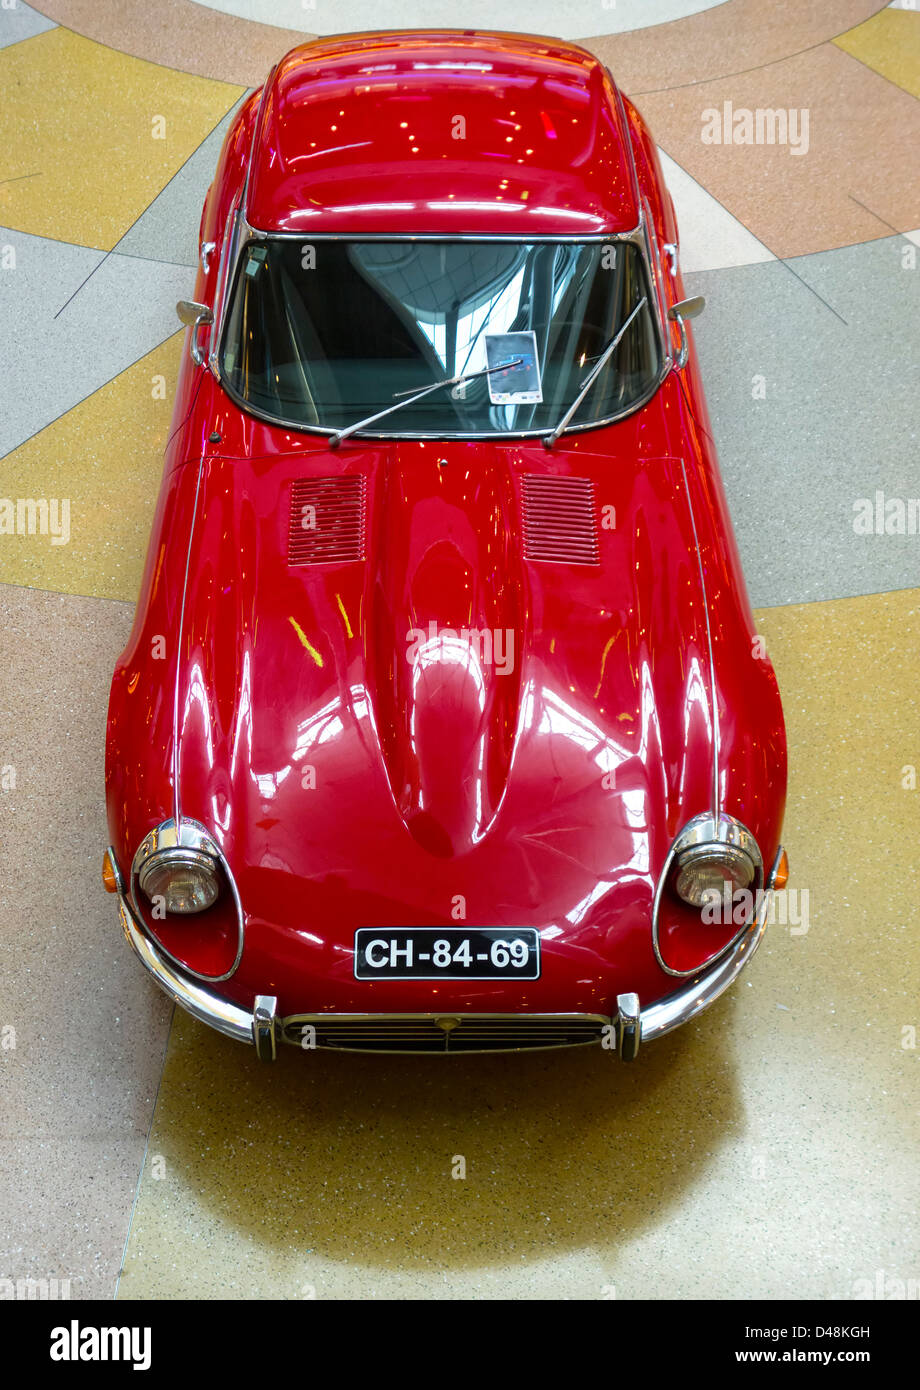 Vue aérienne d'une Jaguar Type E rouge vintage voiture de sport britannique Banque D'Images